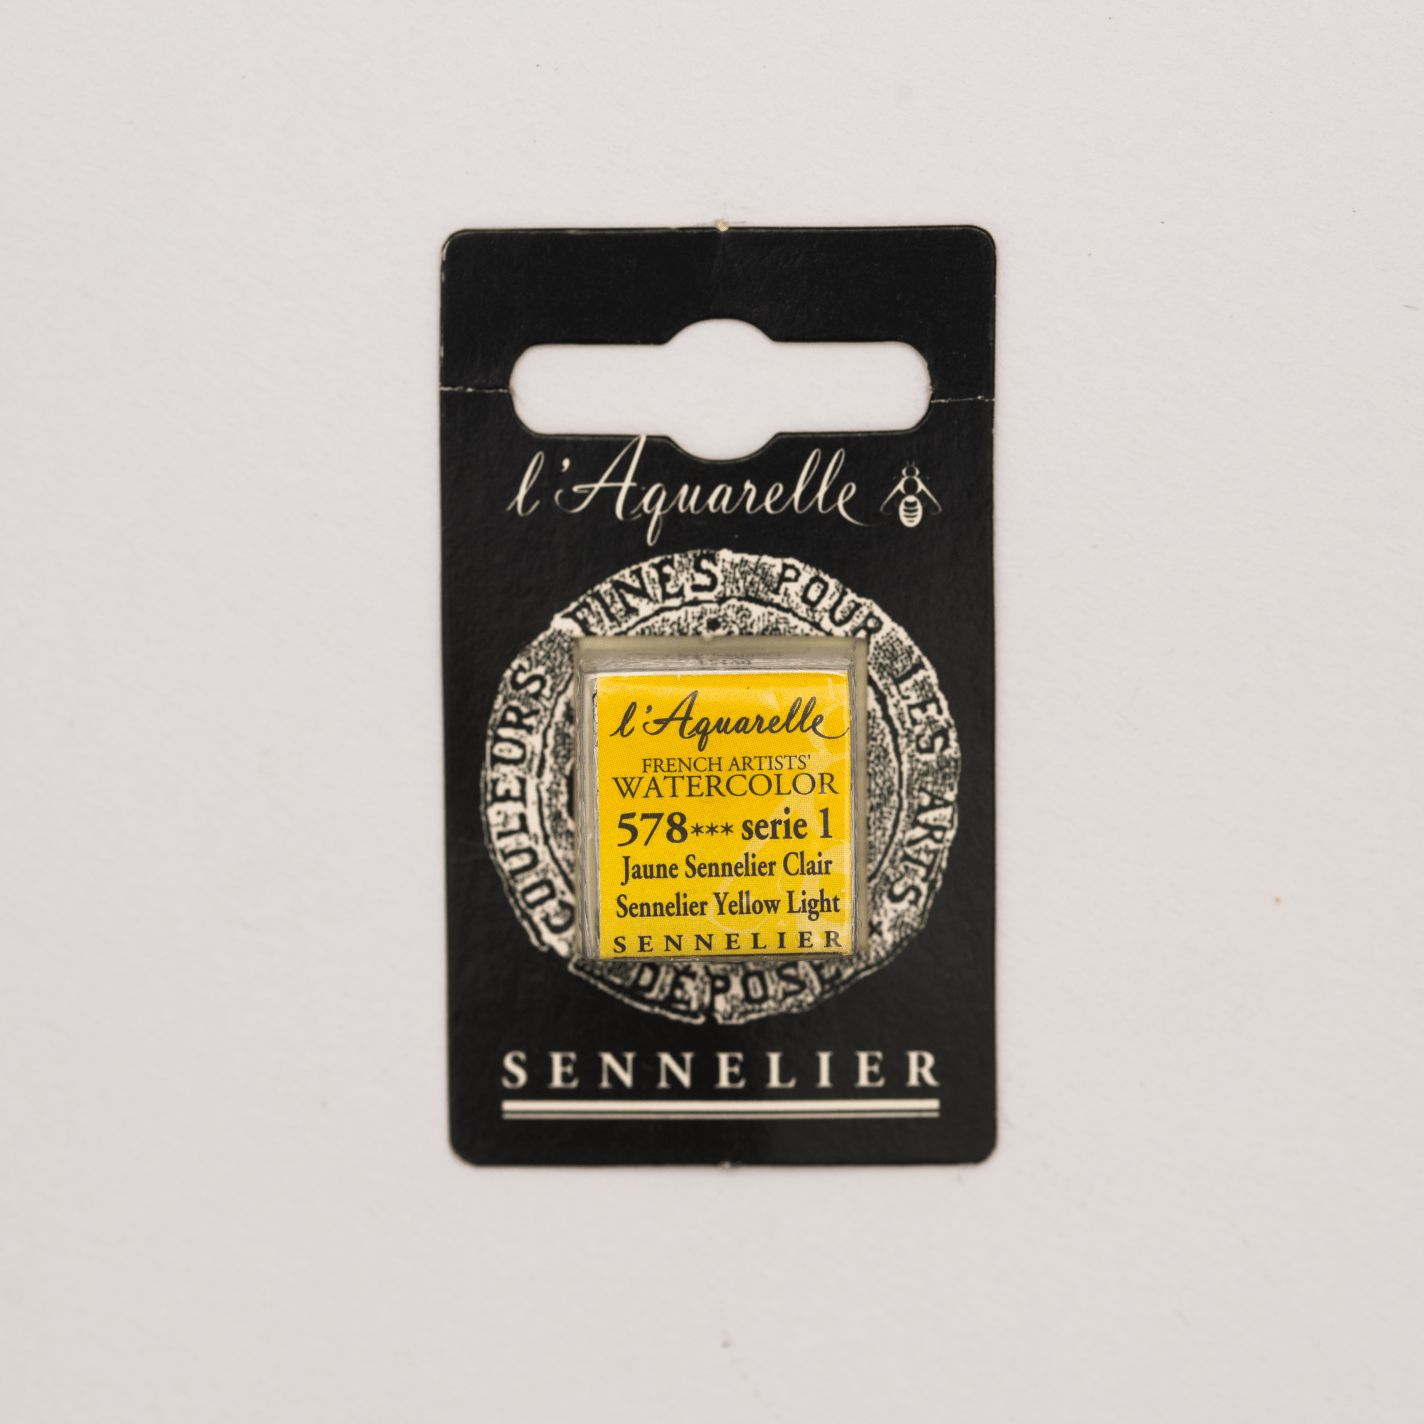 Sennelier Aquarelle pans 1/2 pan Sennelier Yellow Light